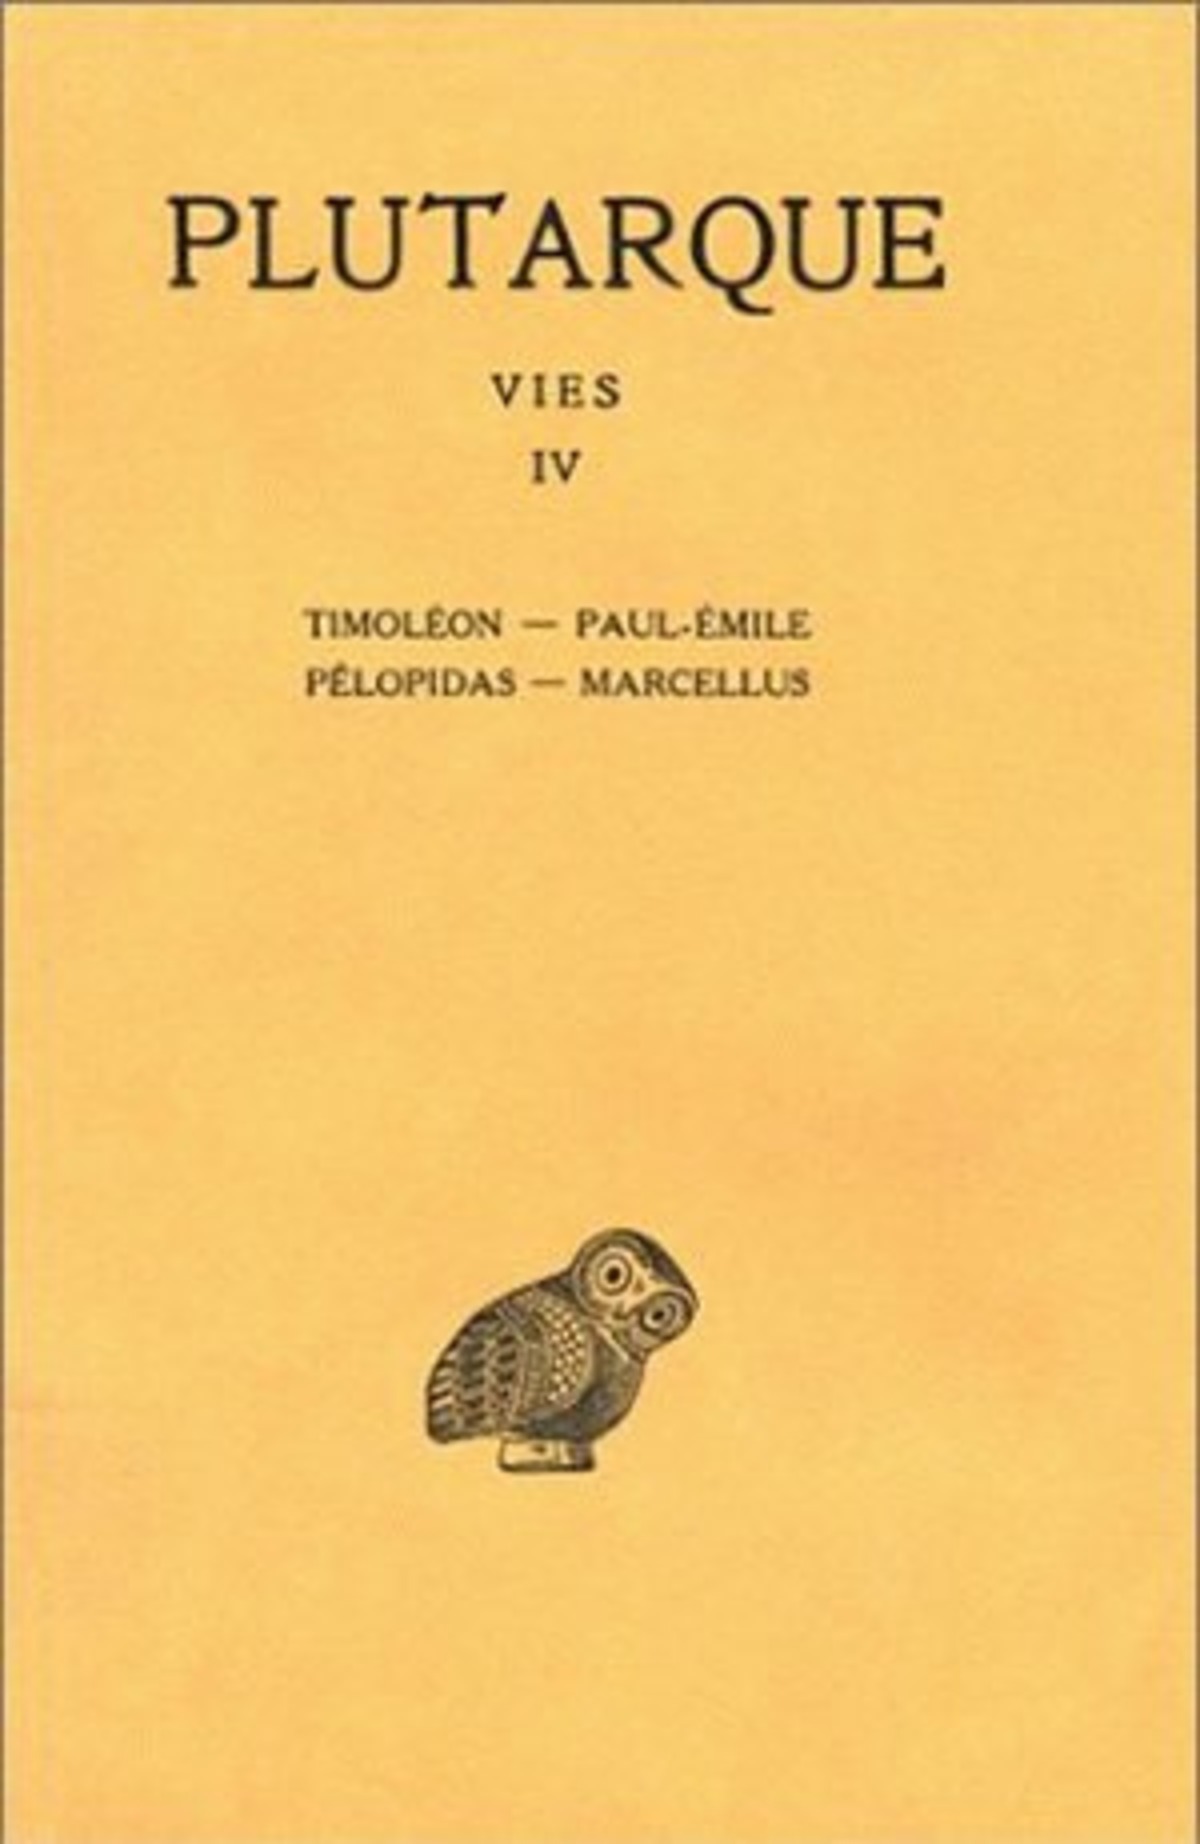 Vies. Tome IV : Timoléon - Paul-Emile. Pélopidas-Marcellus